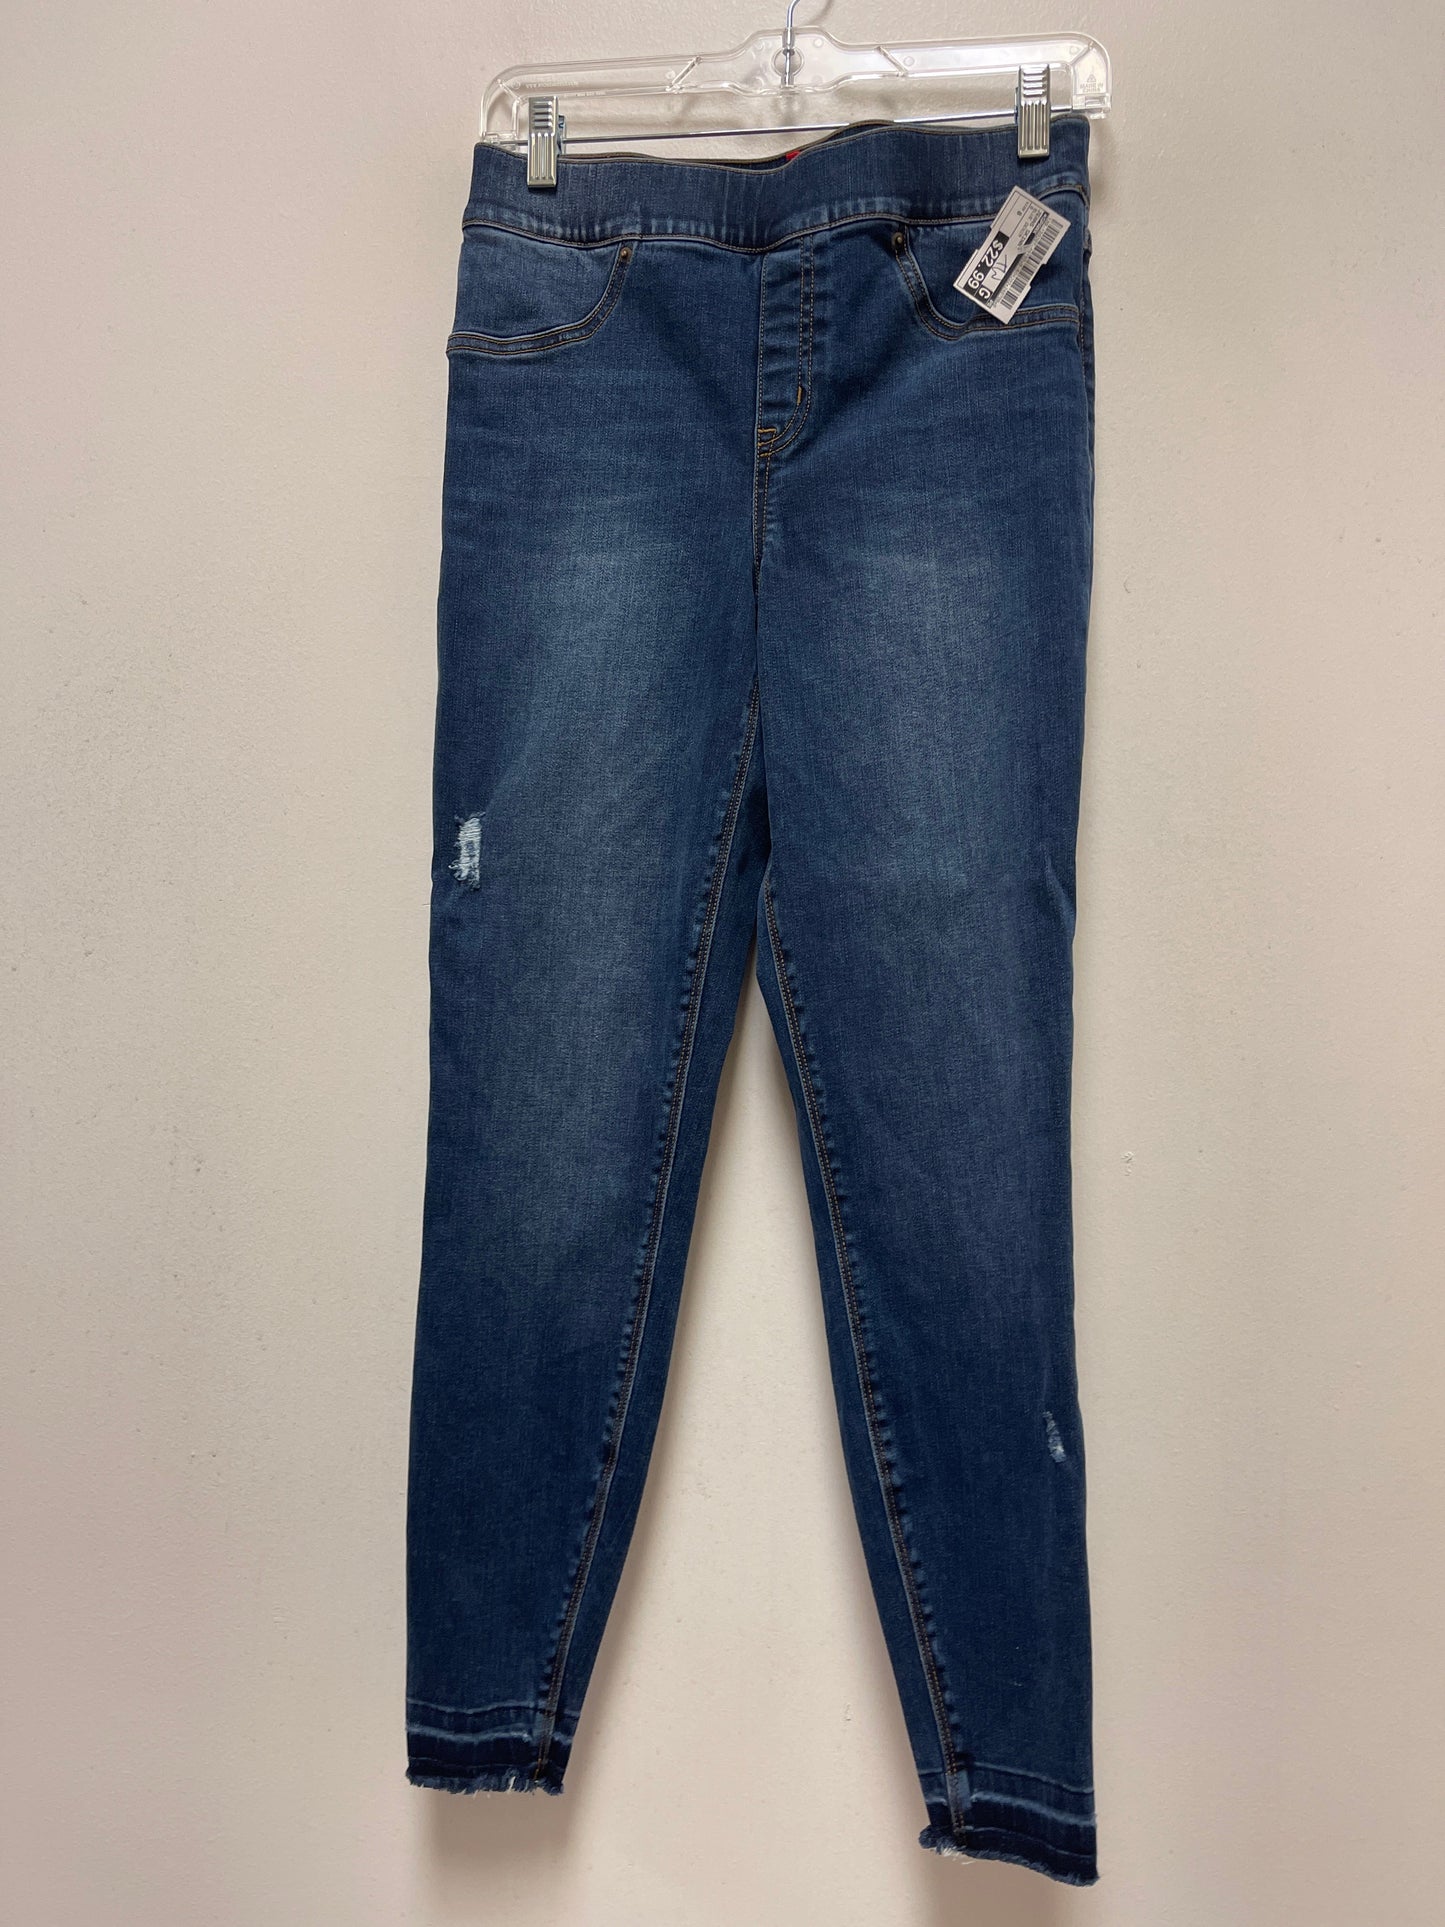 Blue Denim Jeans Skinny Spanx, Size 8